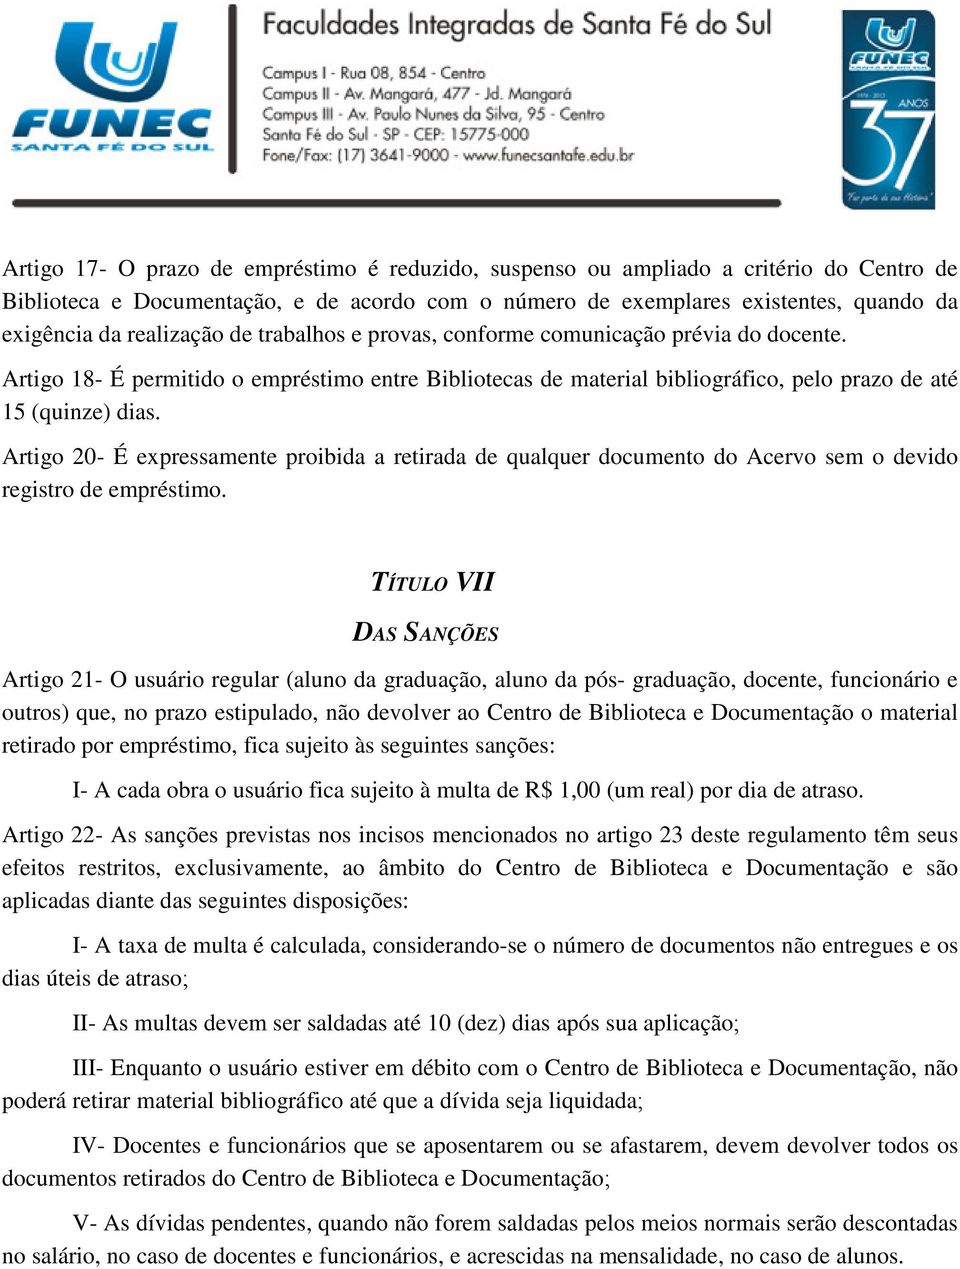 Artigo 20- É expressamente proibida a retirada de qualquer documento do Acervo sem o devido registro de empréstimo.